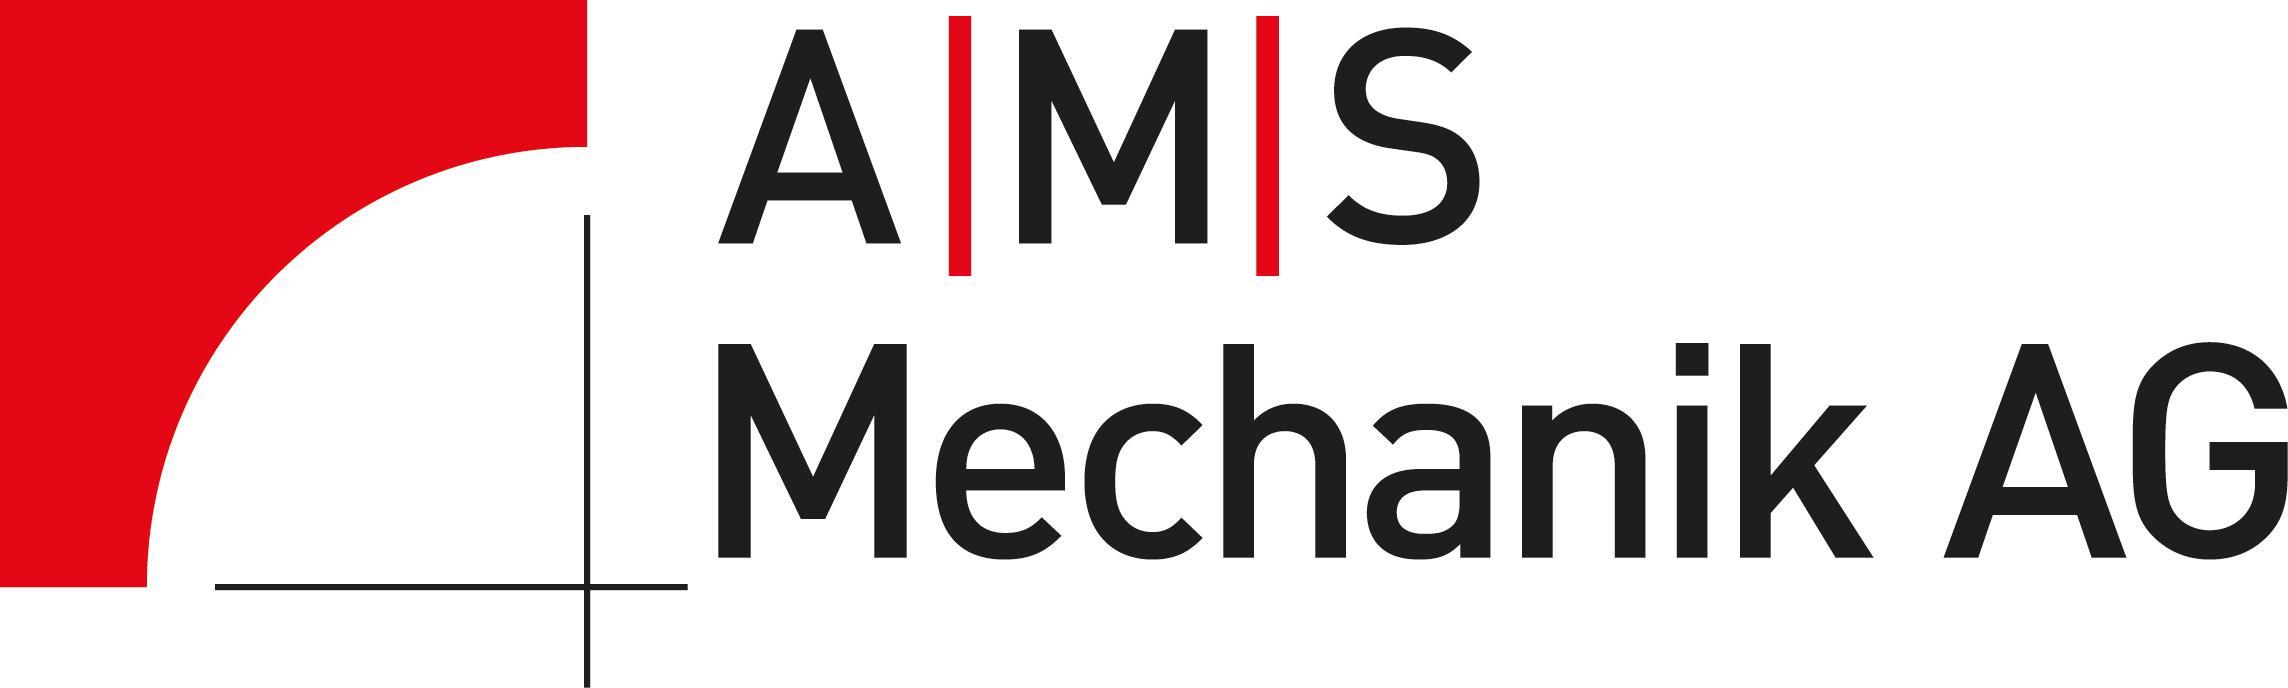 Bilder AMS Mechanik AG